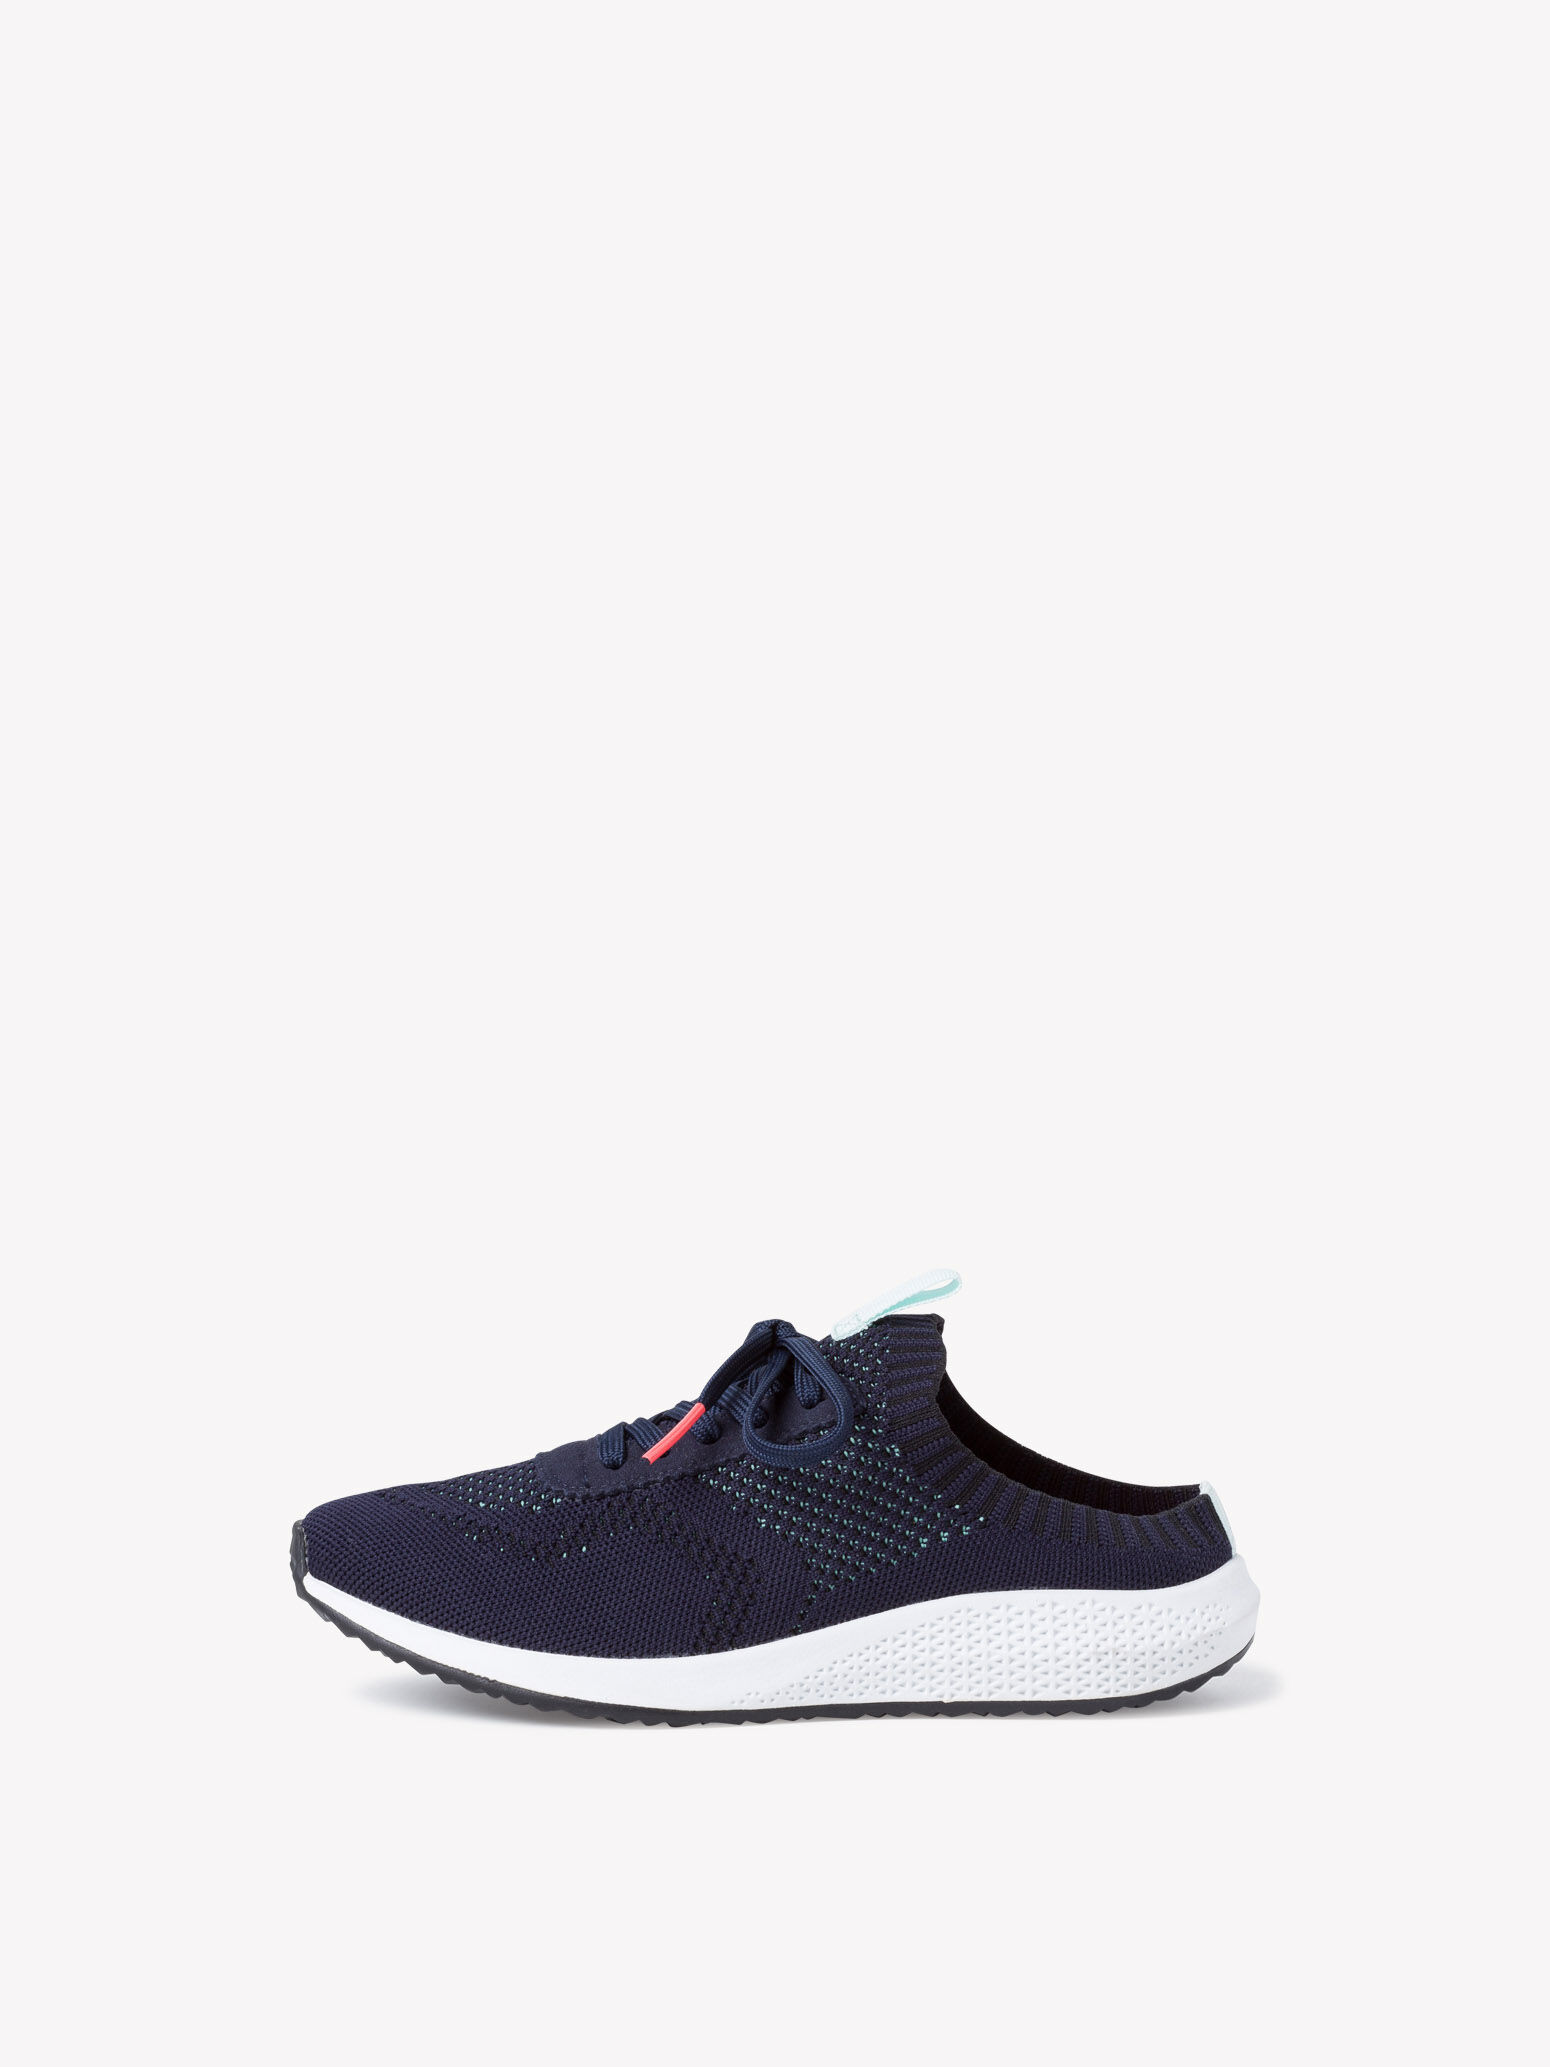 Sneaker - blue 1-1-27314-34-805-40: Buy 